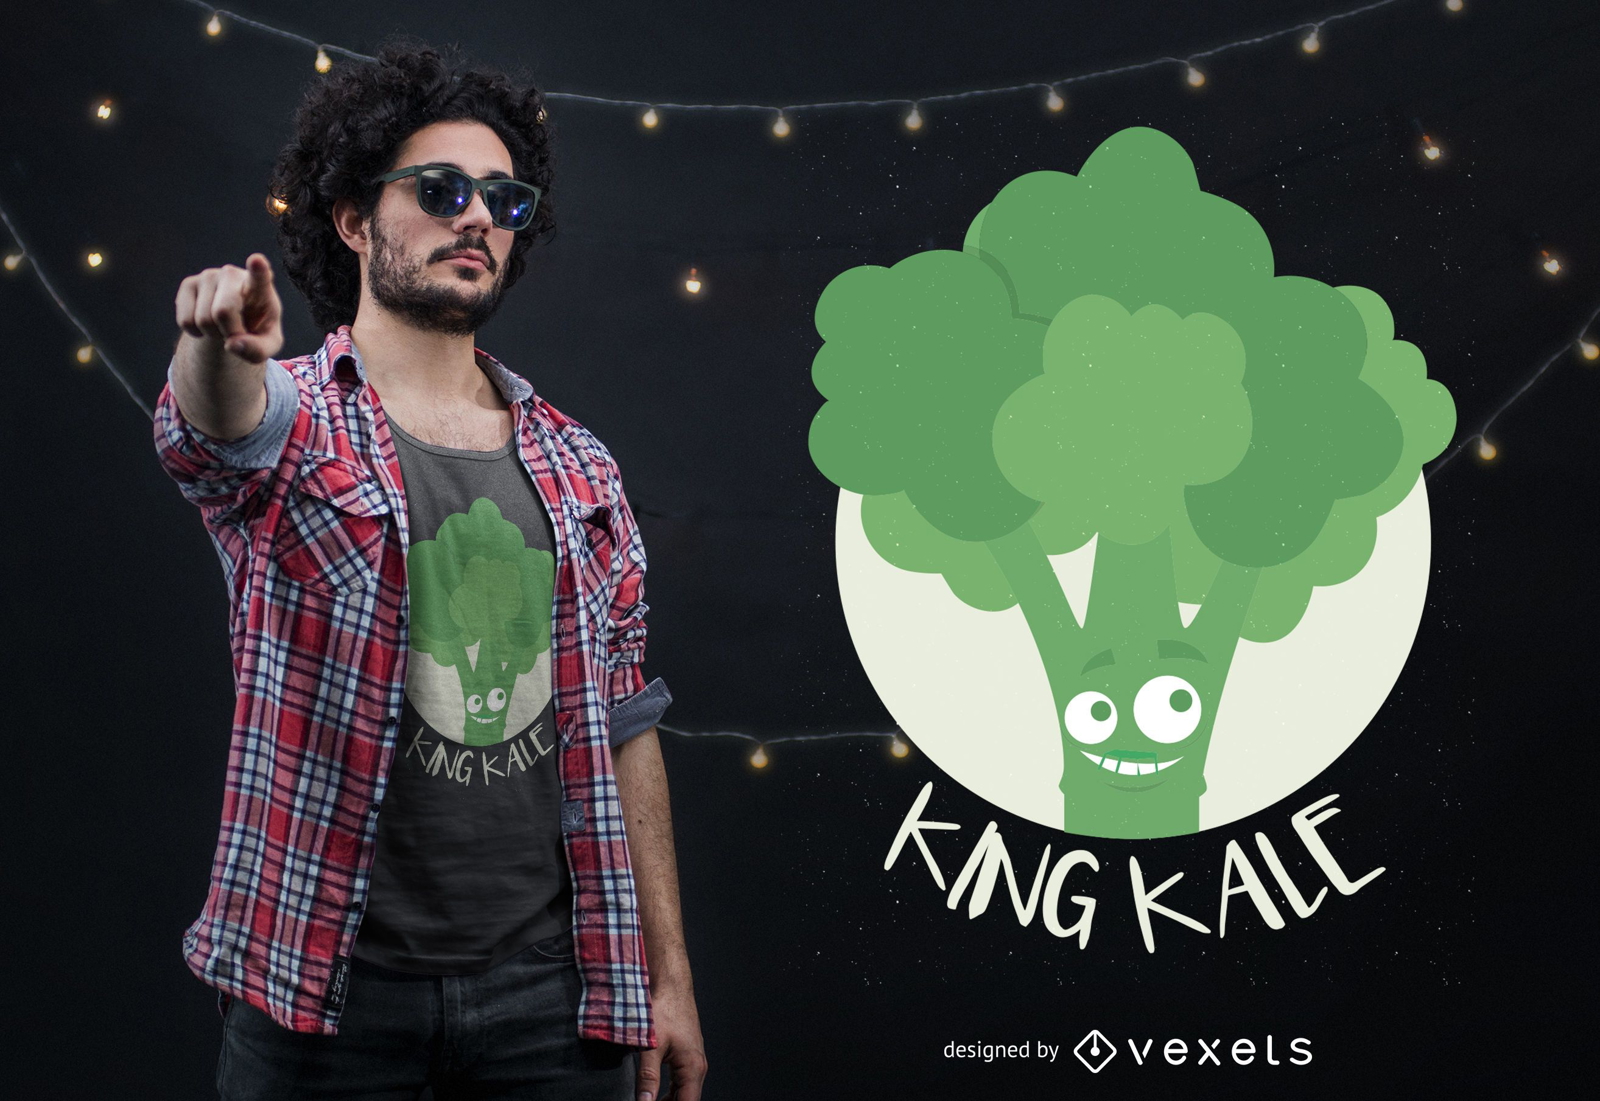 King Kale T-shirt Design